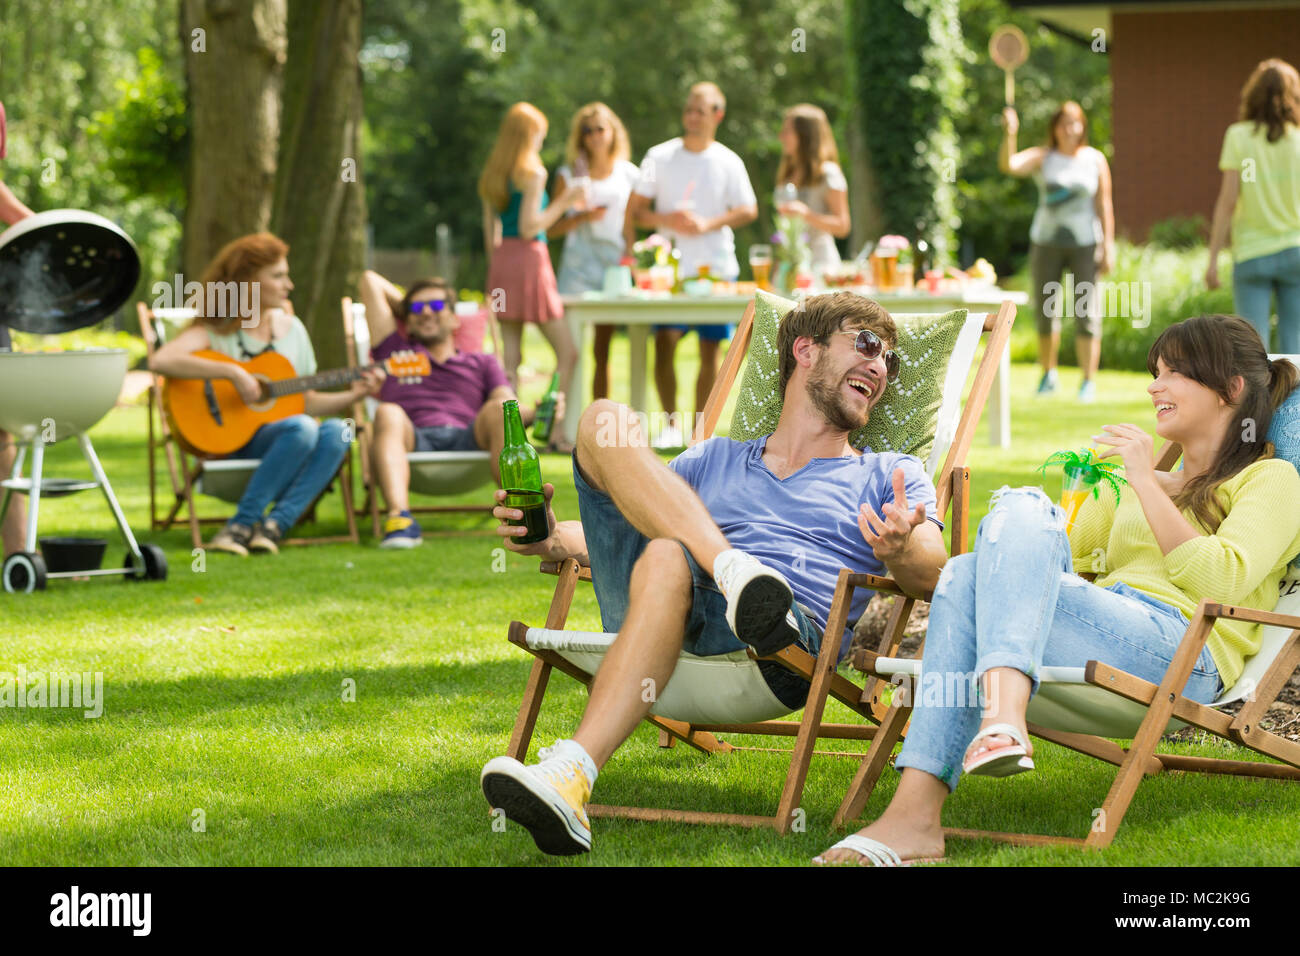 Freunde sitzen auf liegen und trinken Getränke beim Grillen im Garten mit  Freunden Stockfotografie - Alamy